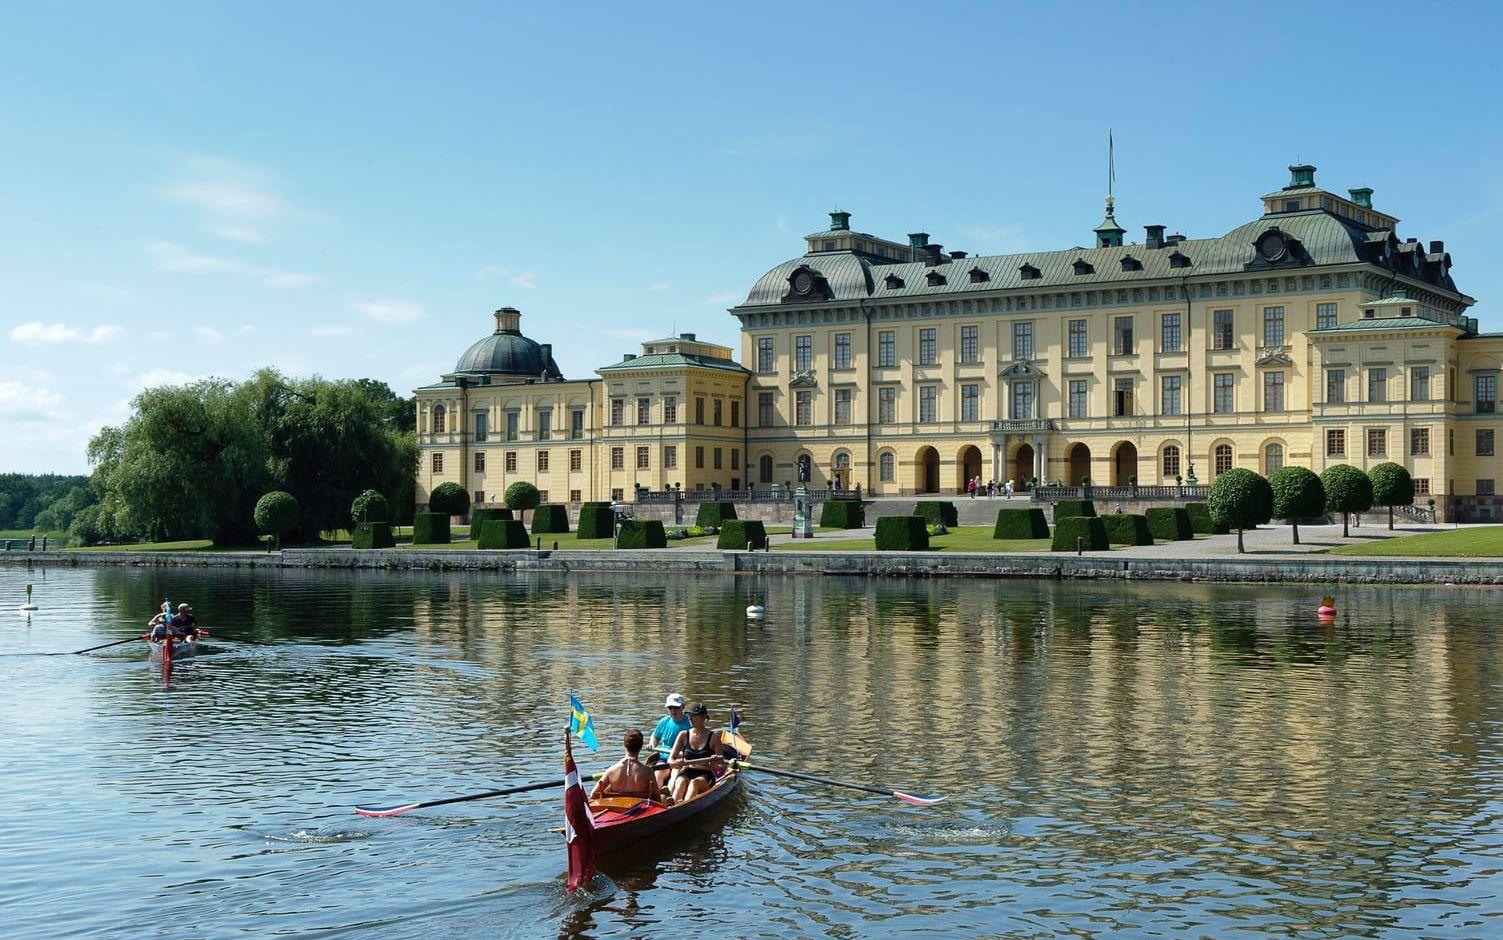 Drottningholms vansinnigt vackra slott hamnar två på listan över Sveriges vackraste byggnad. Bild: Gomer Swahn